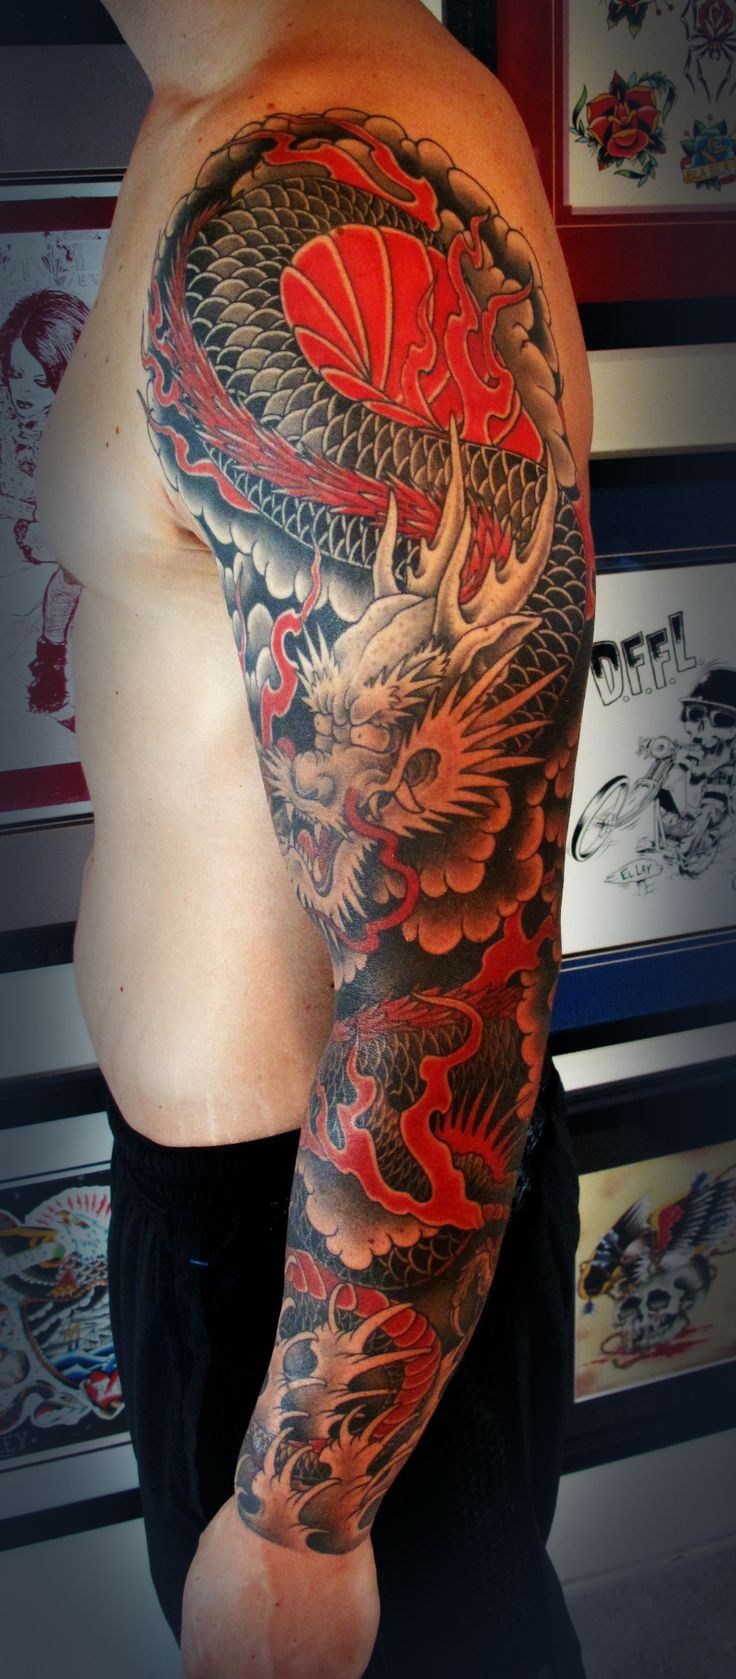 Japanischer roter Drache Tattoo am ganzen Arm